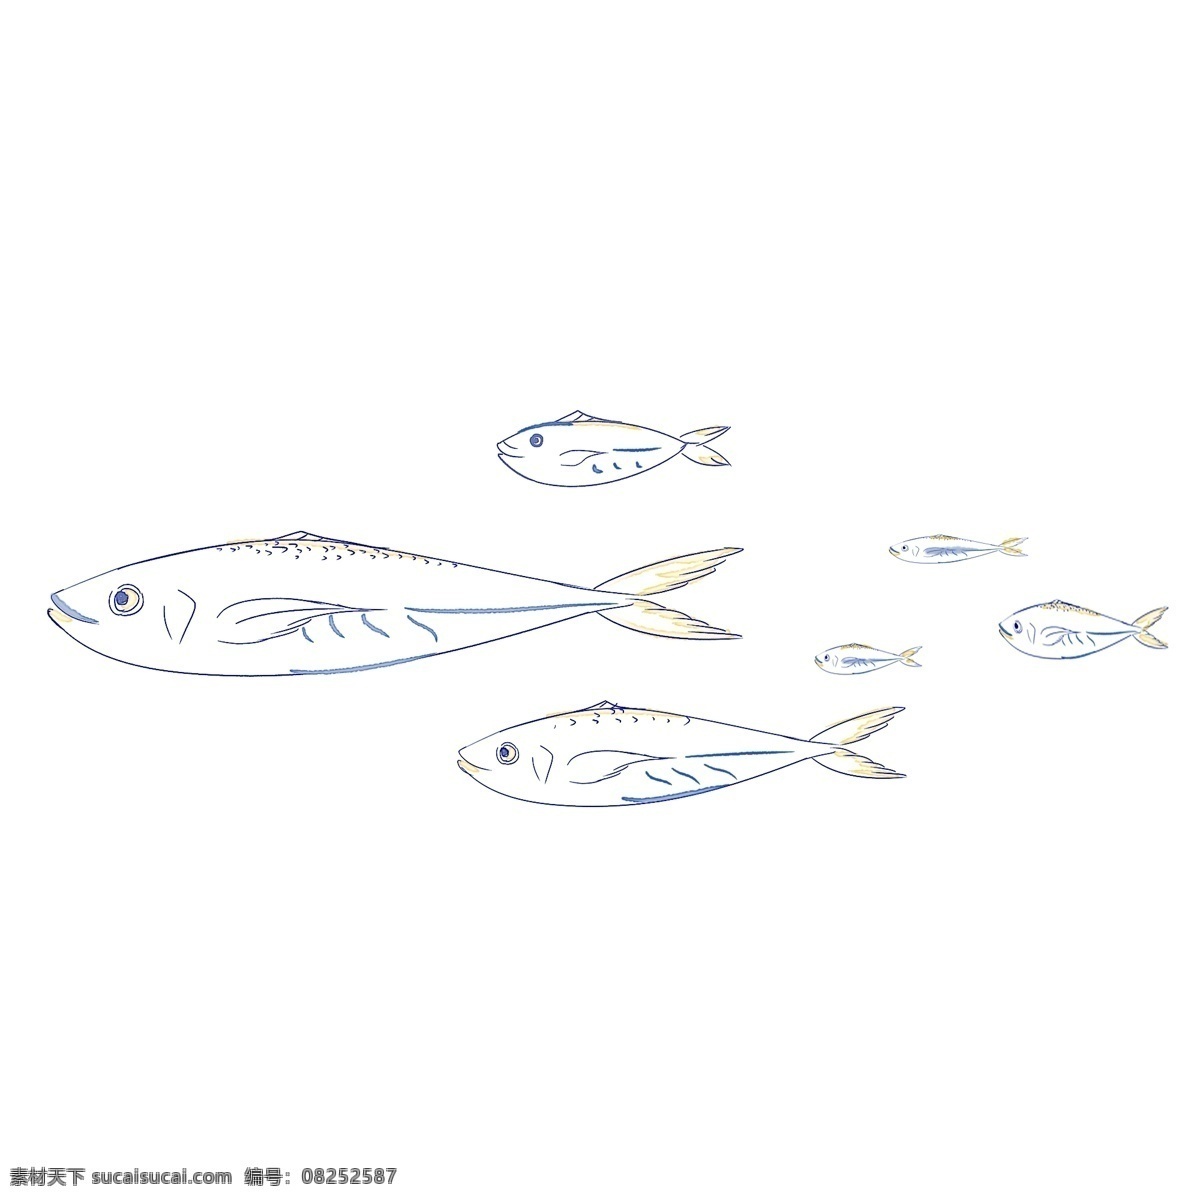 海洋 鱼 花边 蓝色 金色 鲅鱼 鱼群 水彩 清新 纹饰 海洋鱼 深海鱼 蓝色鱼 线条感 手账 手绘 大海